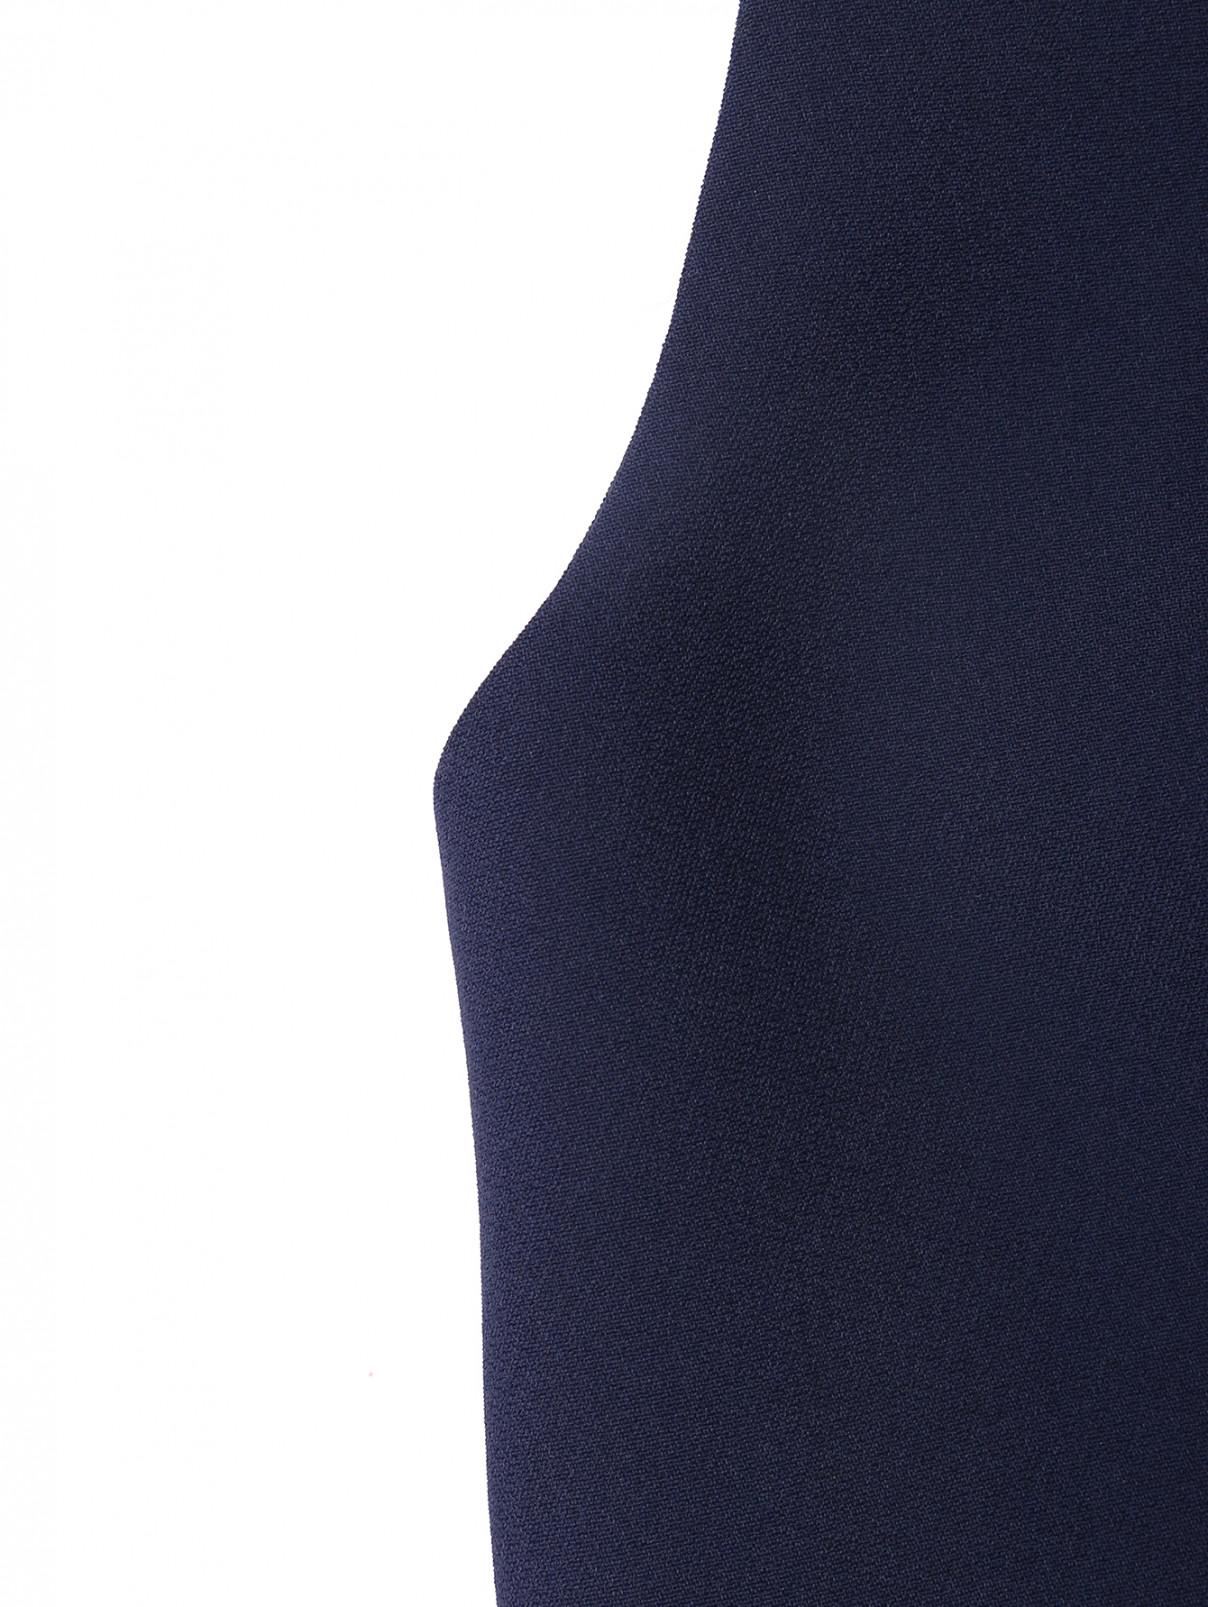 Укороченный жилет на пуговицах Luisa Spagnoli  –  Деталь  – Цвет:  Синий